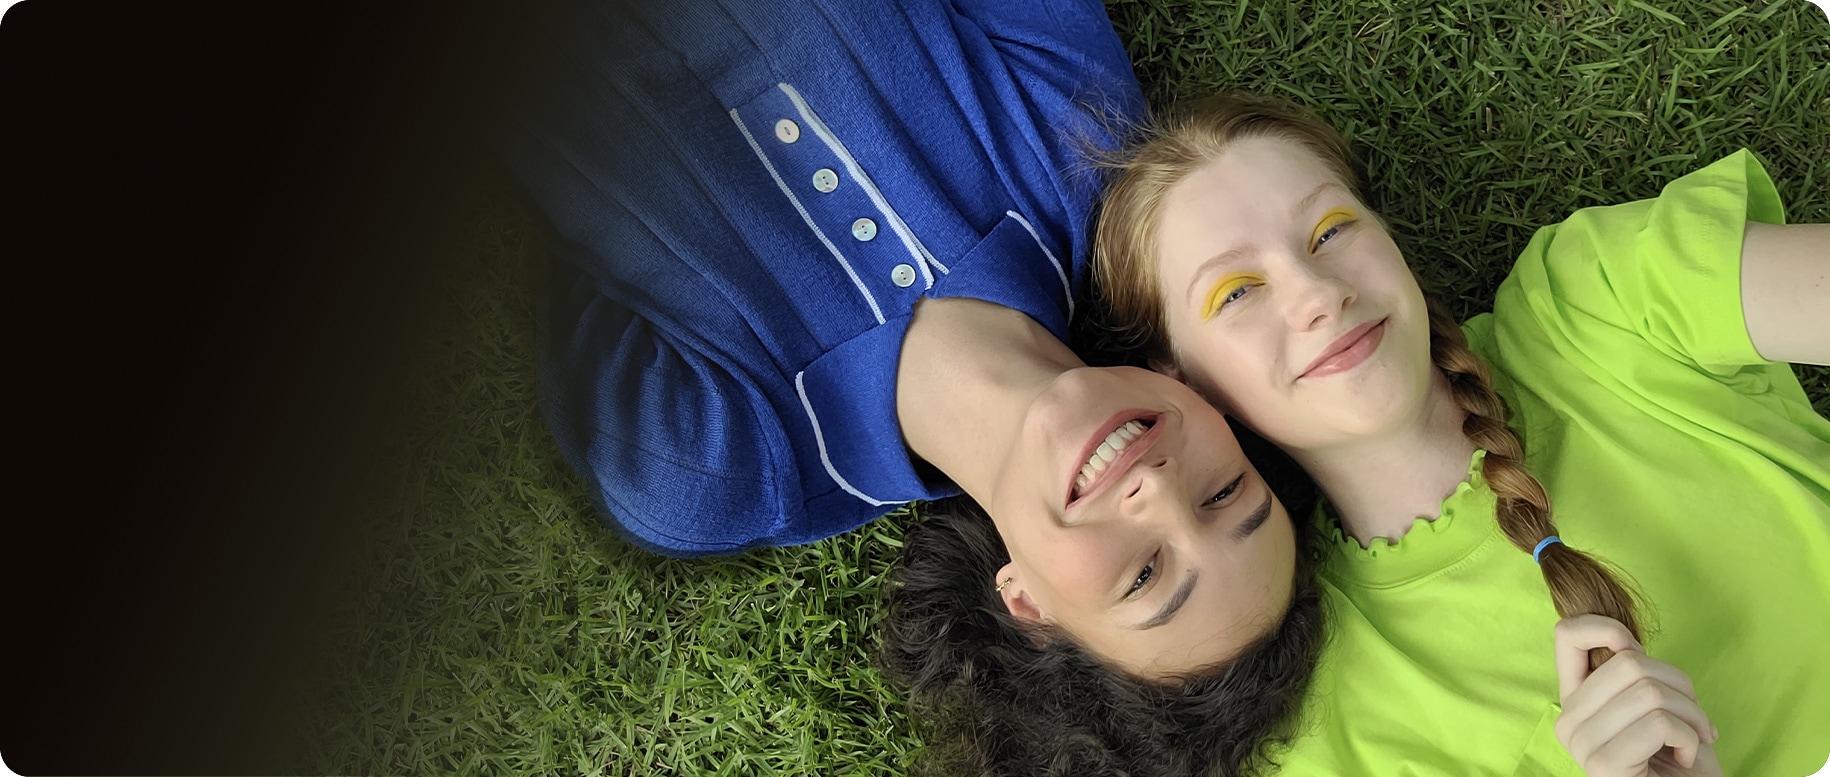 Vista aérea de duas mulheres deitadas lado a lado na grama. A mulher da esquerda está vestindo uma camisa de colarinho azul, enquanto a mulher da direita está vestindo uma blusa verde-limão. Suas cabeças são pressionadas em extremidades opostas. Ambos estão sorrindo para a câmera.